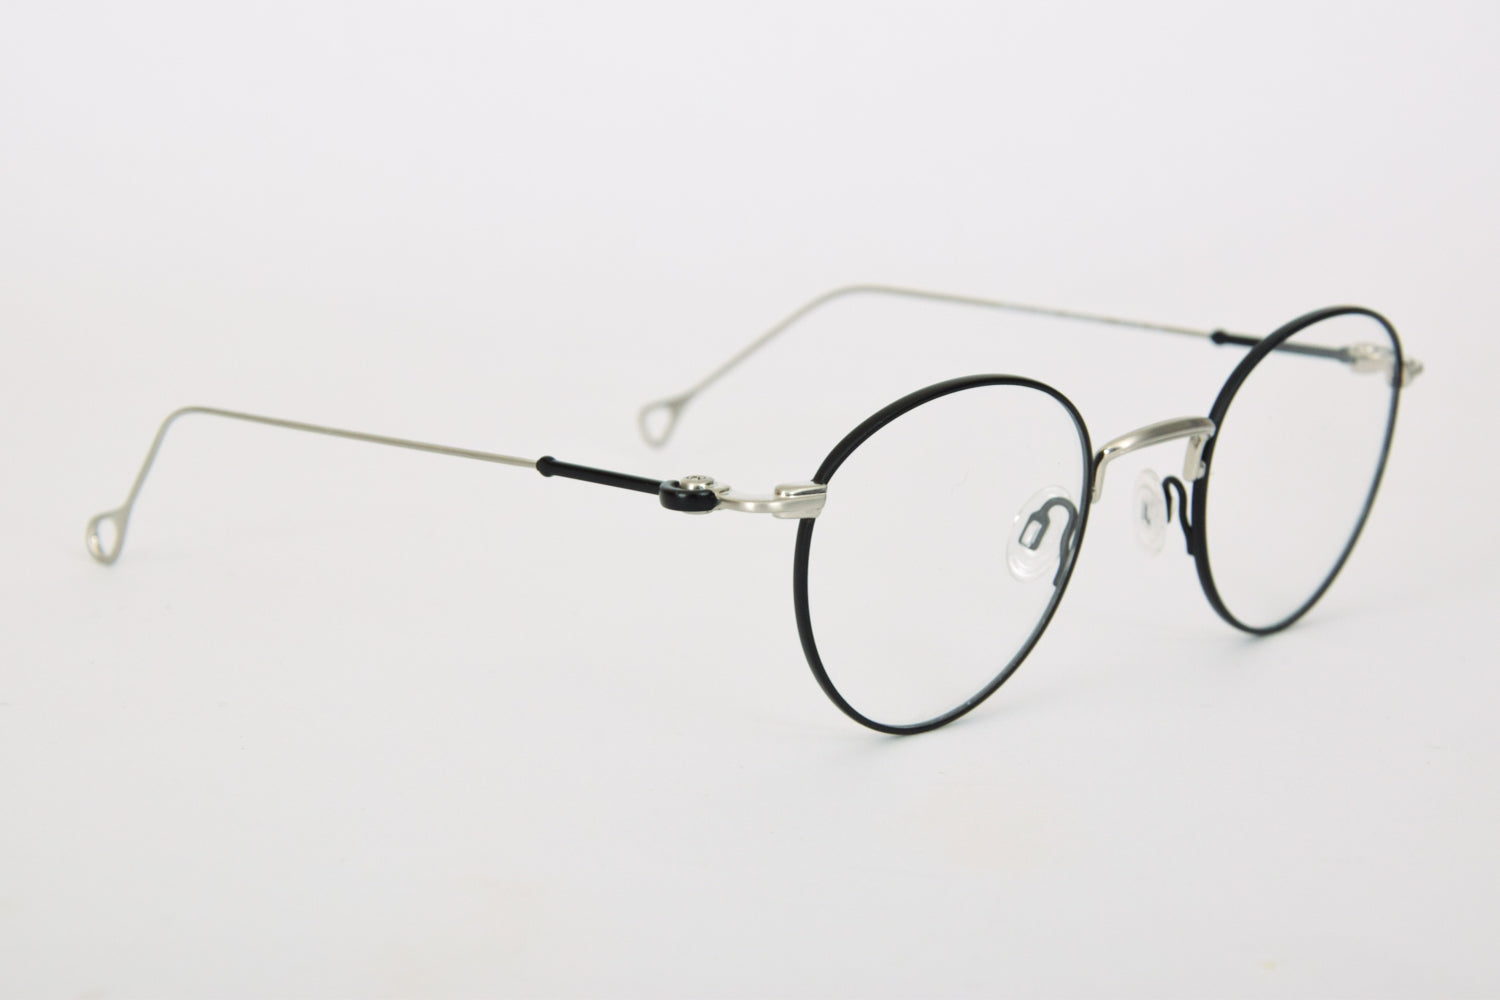 Dettaglio Laterale di Occhiali da Vista Occhiali da Vista Anne et Valentin Bourdieu Argento e Nero